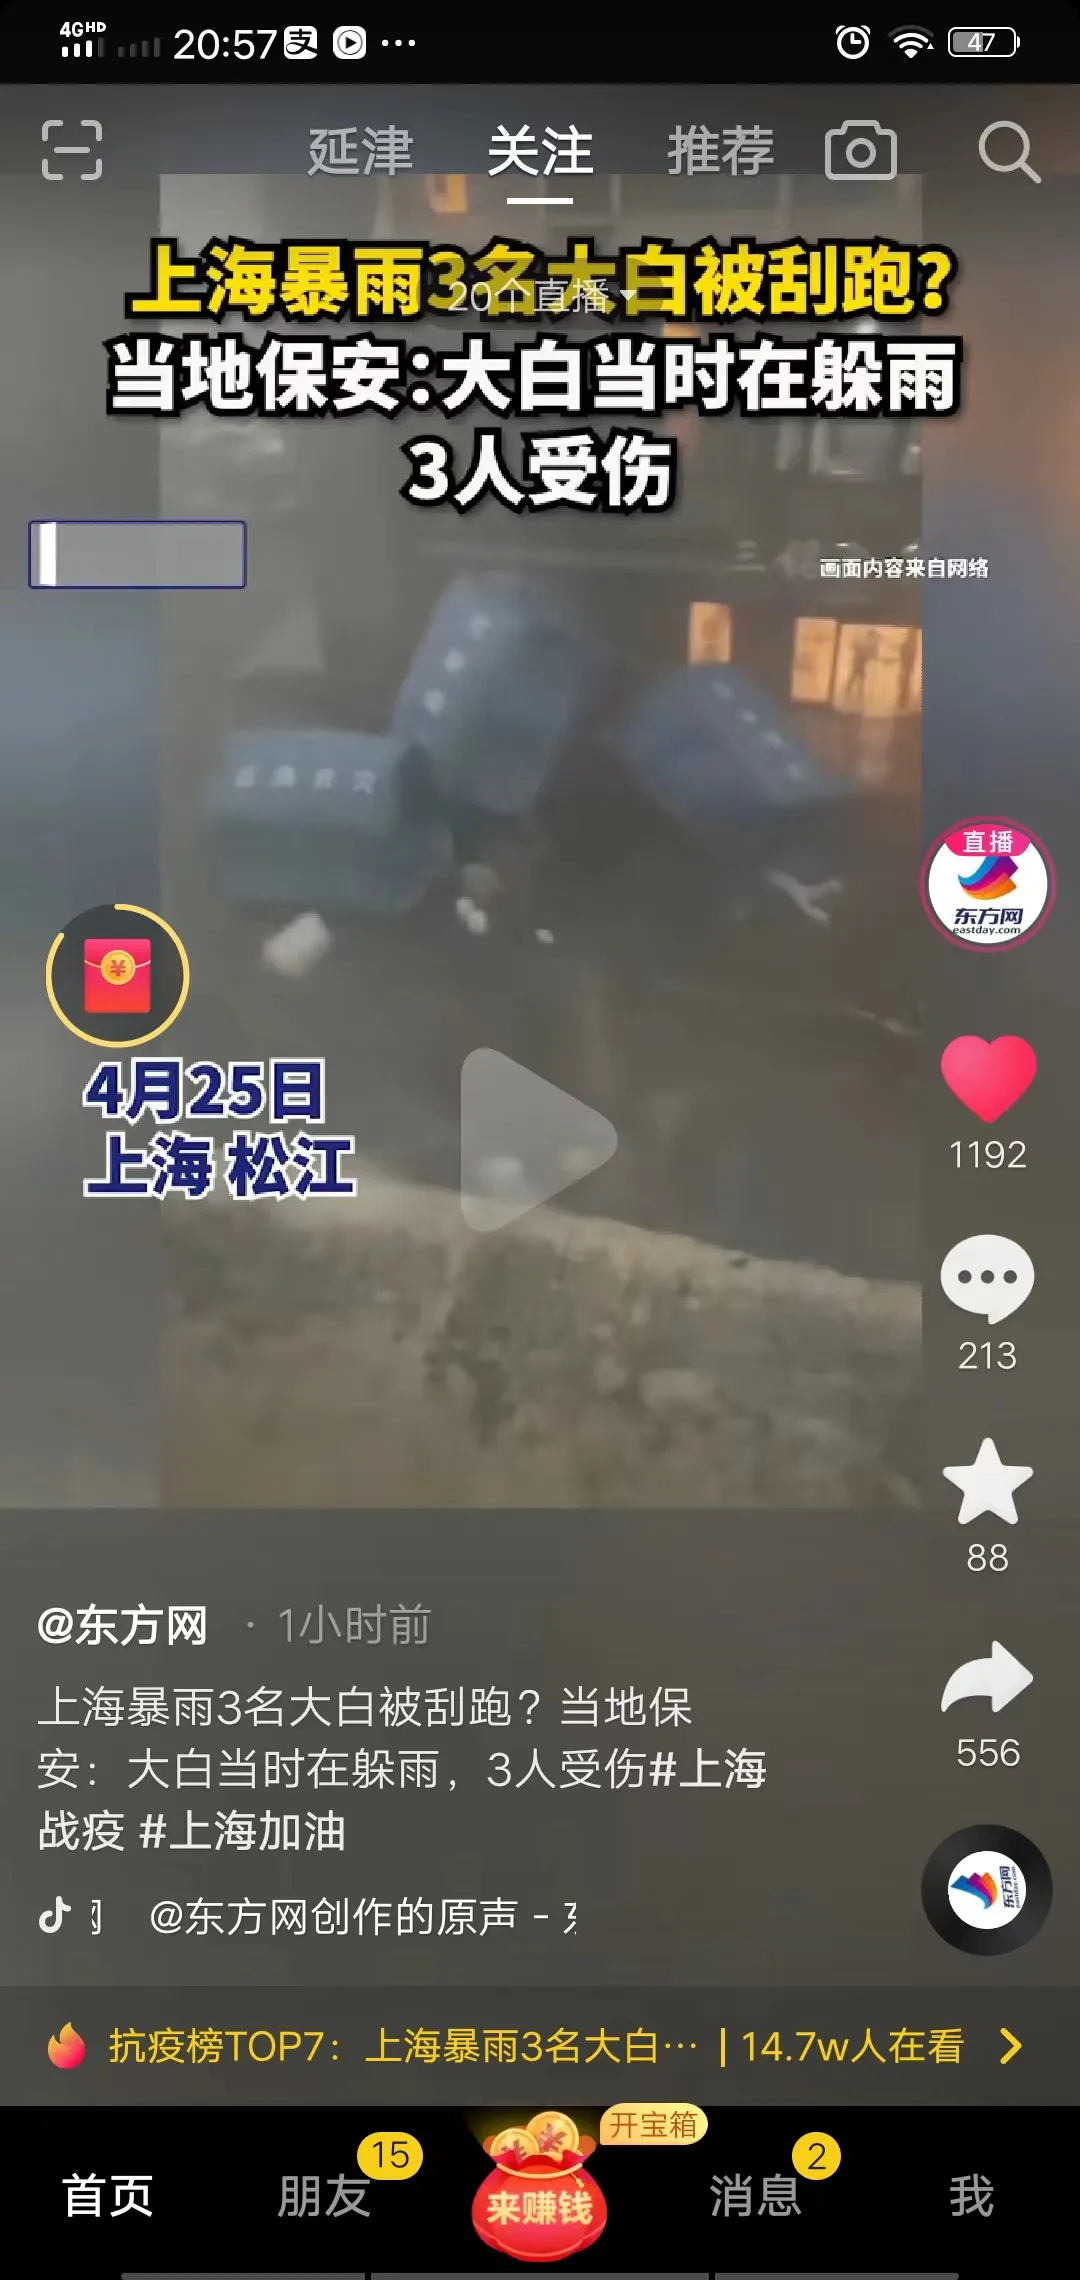 上海暴雨3名大白被刮跑?保安发声：大白当时在躲雨 受了轻伤